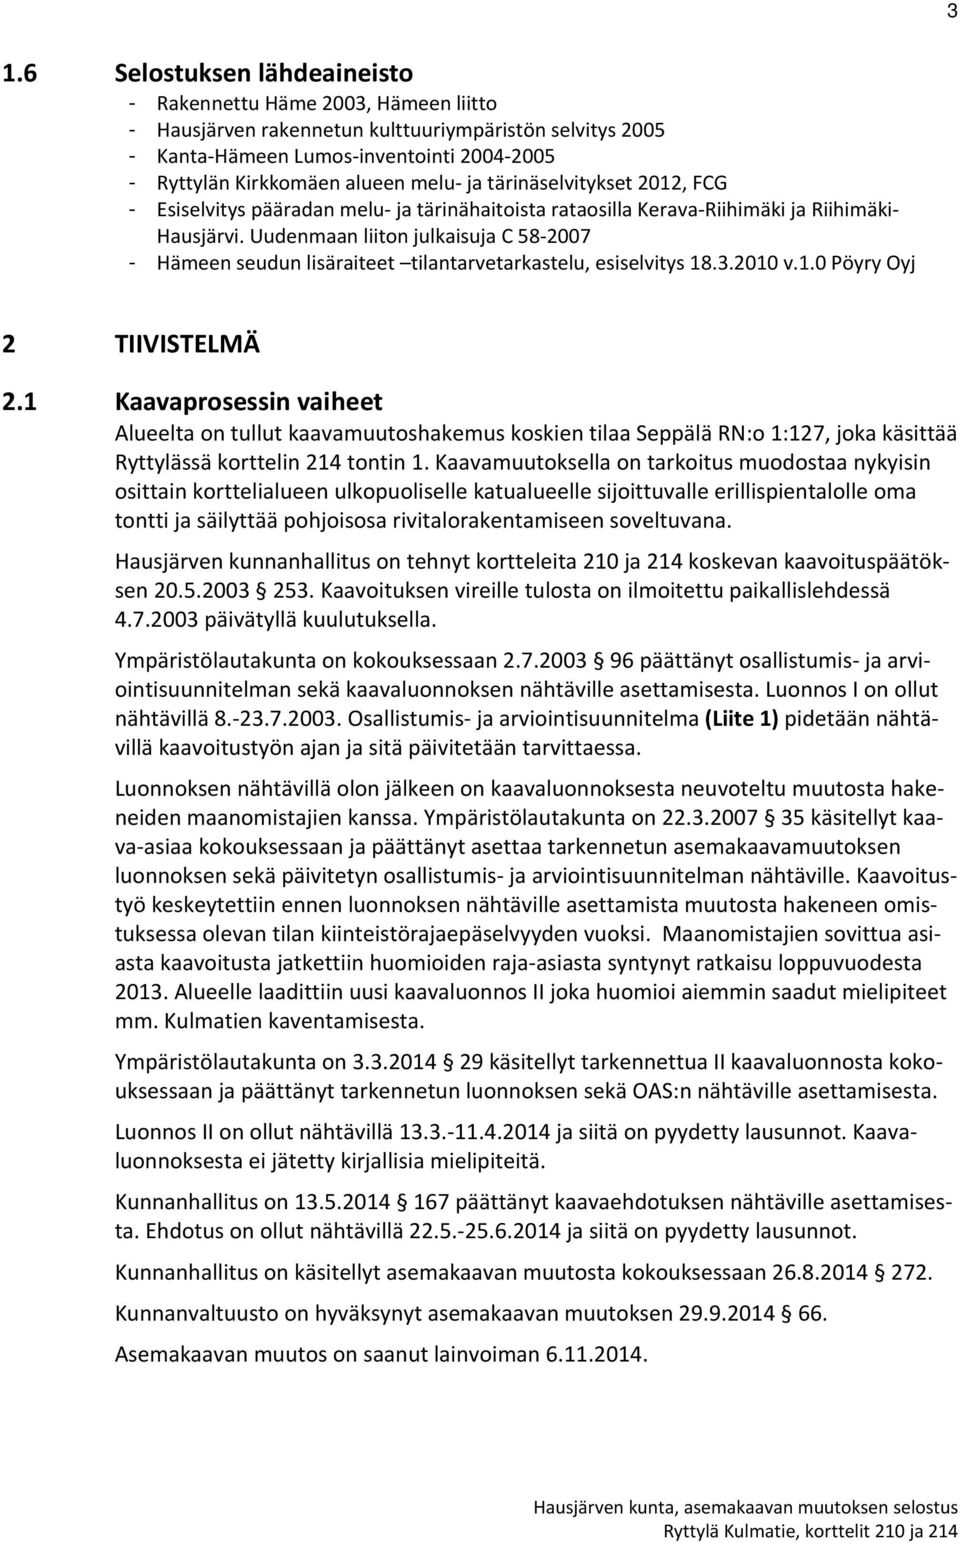 Uudenmaan liiton julkaisuja C 58 2007 - Hämeen seudun lisäraiteet tilantarvetarkastelu, esiselvitys 18.3.2010 v.1.0 Pöyry Oyj 2 TIIVISTELMÄ 2.